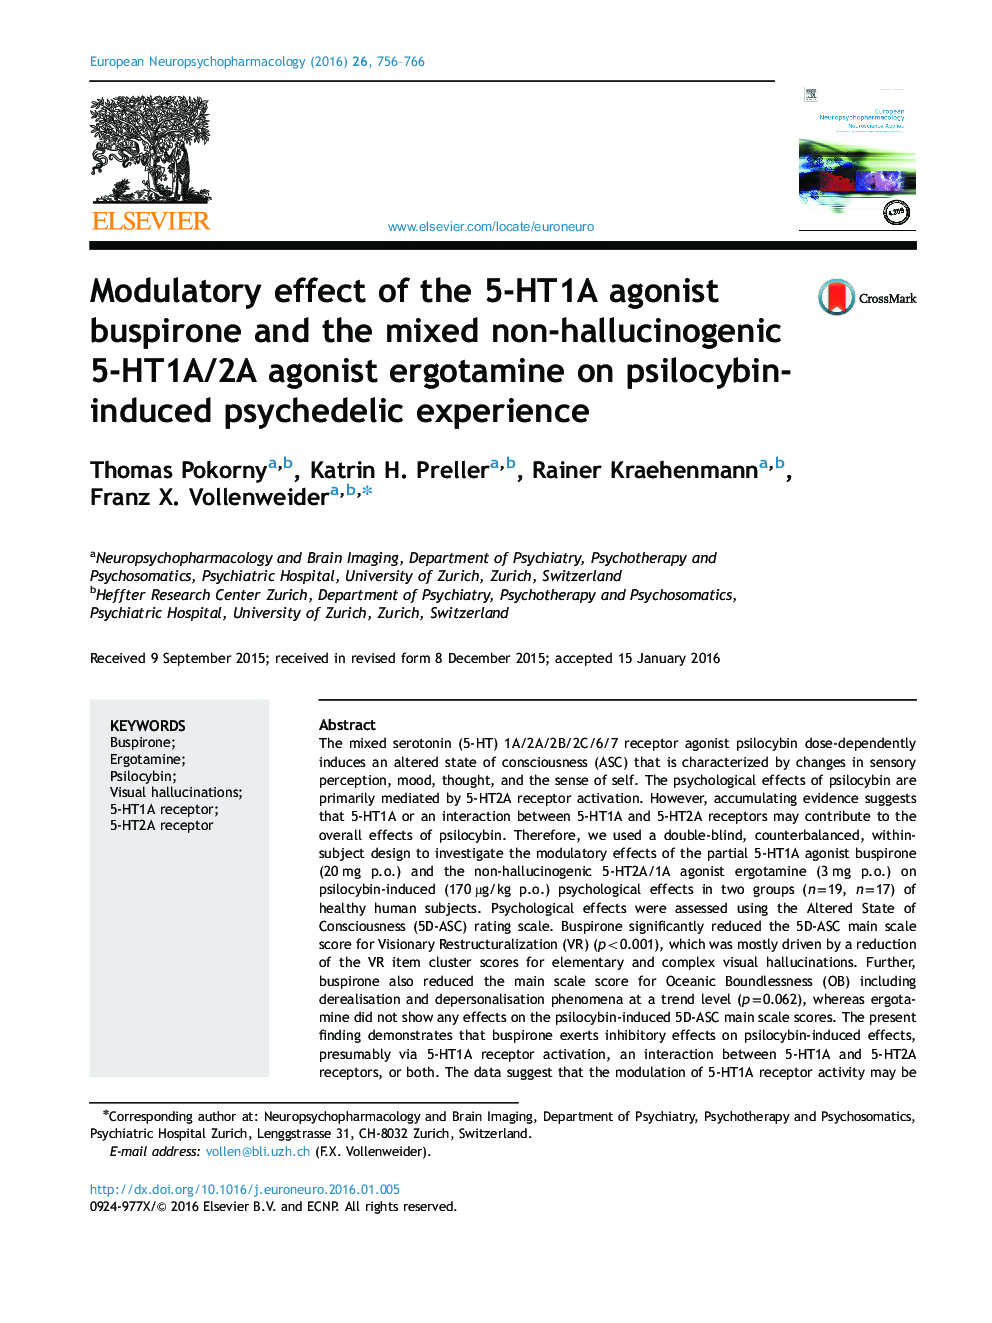 اثر تعدیلی بوسپیرون آگونیست 5 HT1A و ارگوتامین آگونیست 5-HT1A/2A غیرتوهم زای مخلوط بر تجربه روانگردان ناشی از psilocybin 